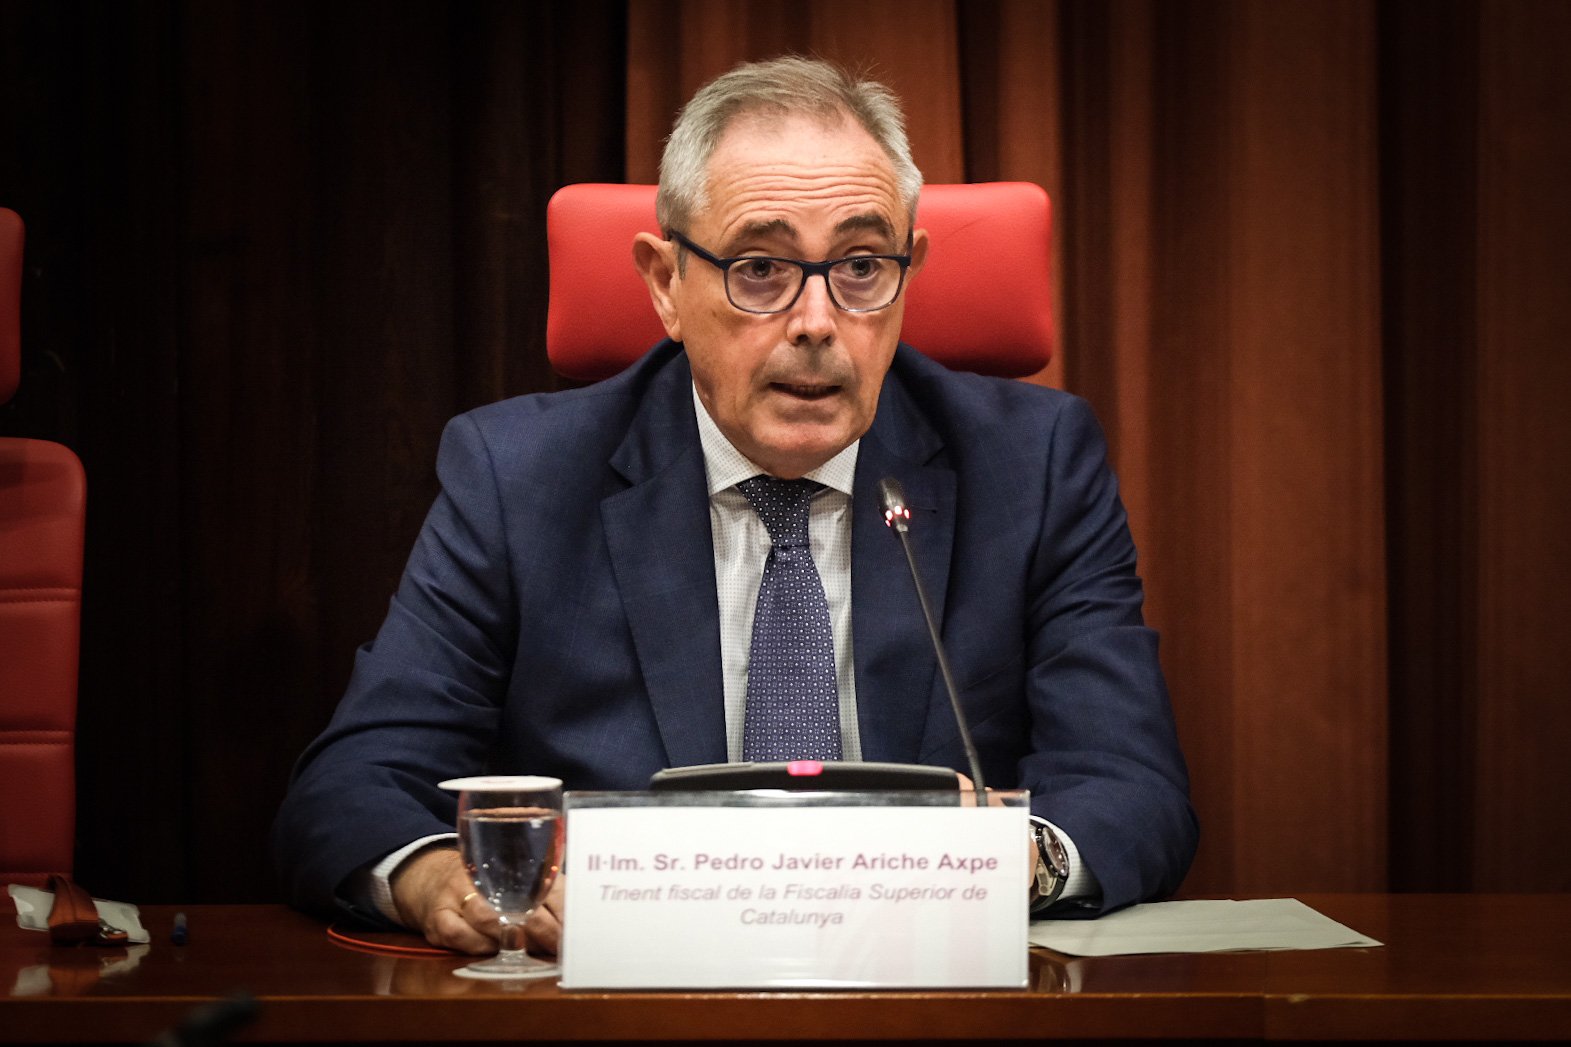 La Fiscalía Superior de Catalunya "rechaza injerencias políticas" en las investigaciones de los Mossos